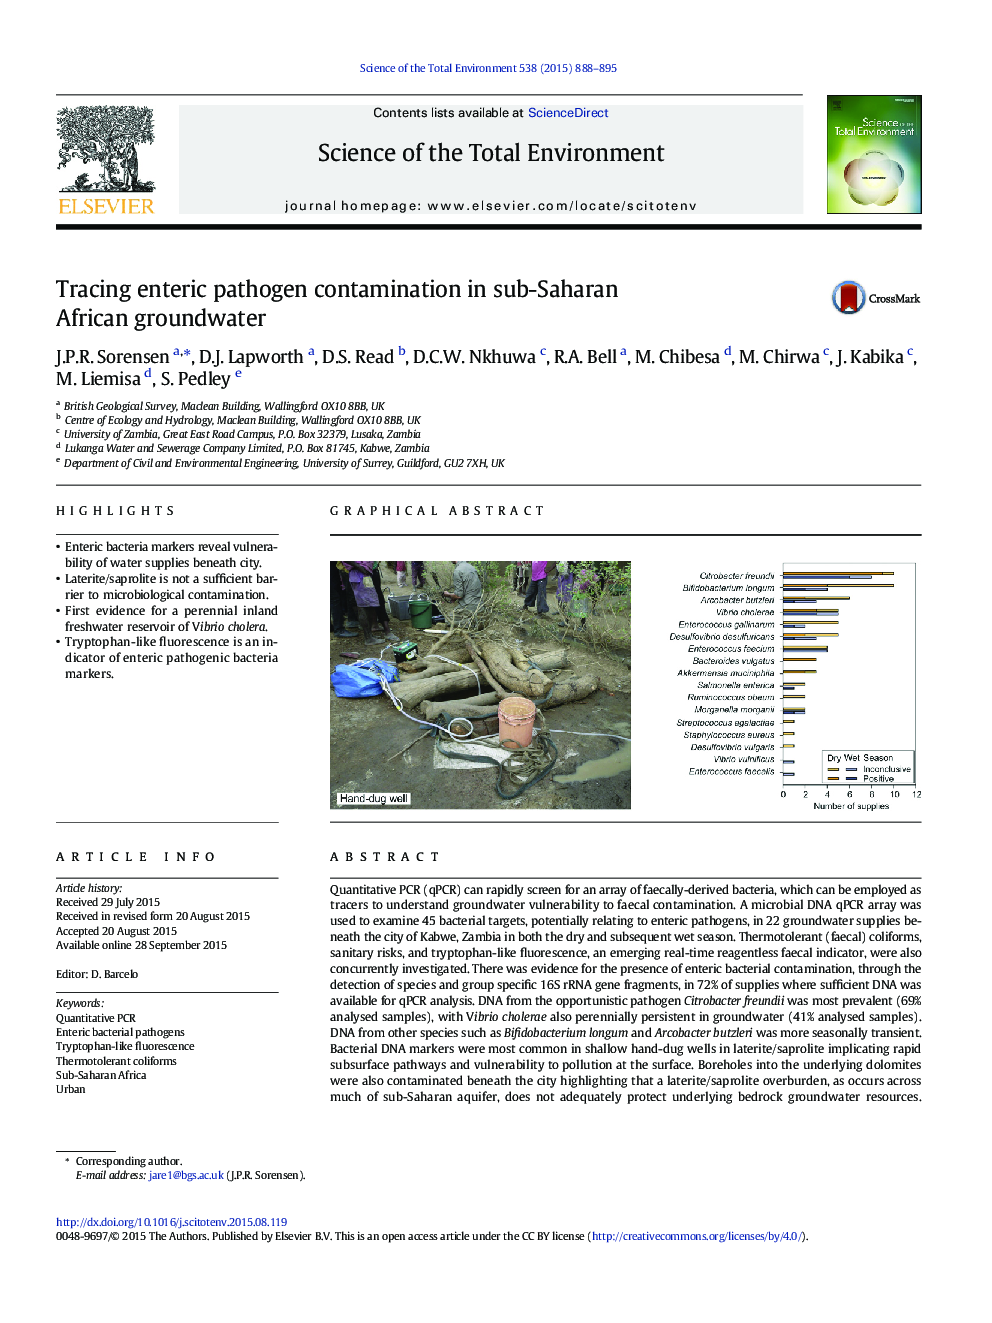 ردیابی آلودگی پاتوژن عفونی در آبهای زیرزمینی دریای جنوب صحرای آفریقا 